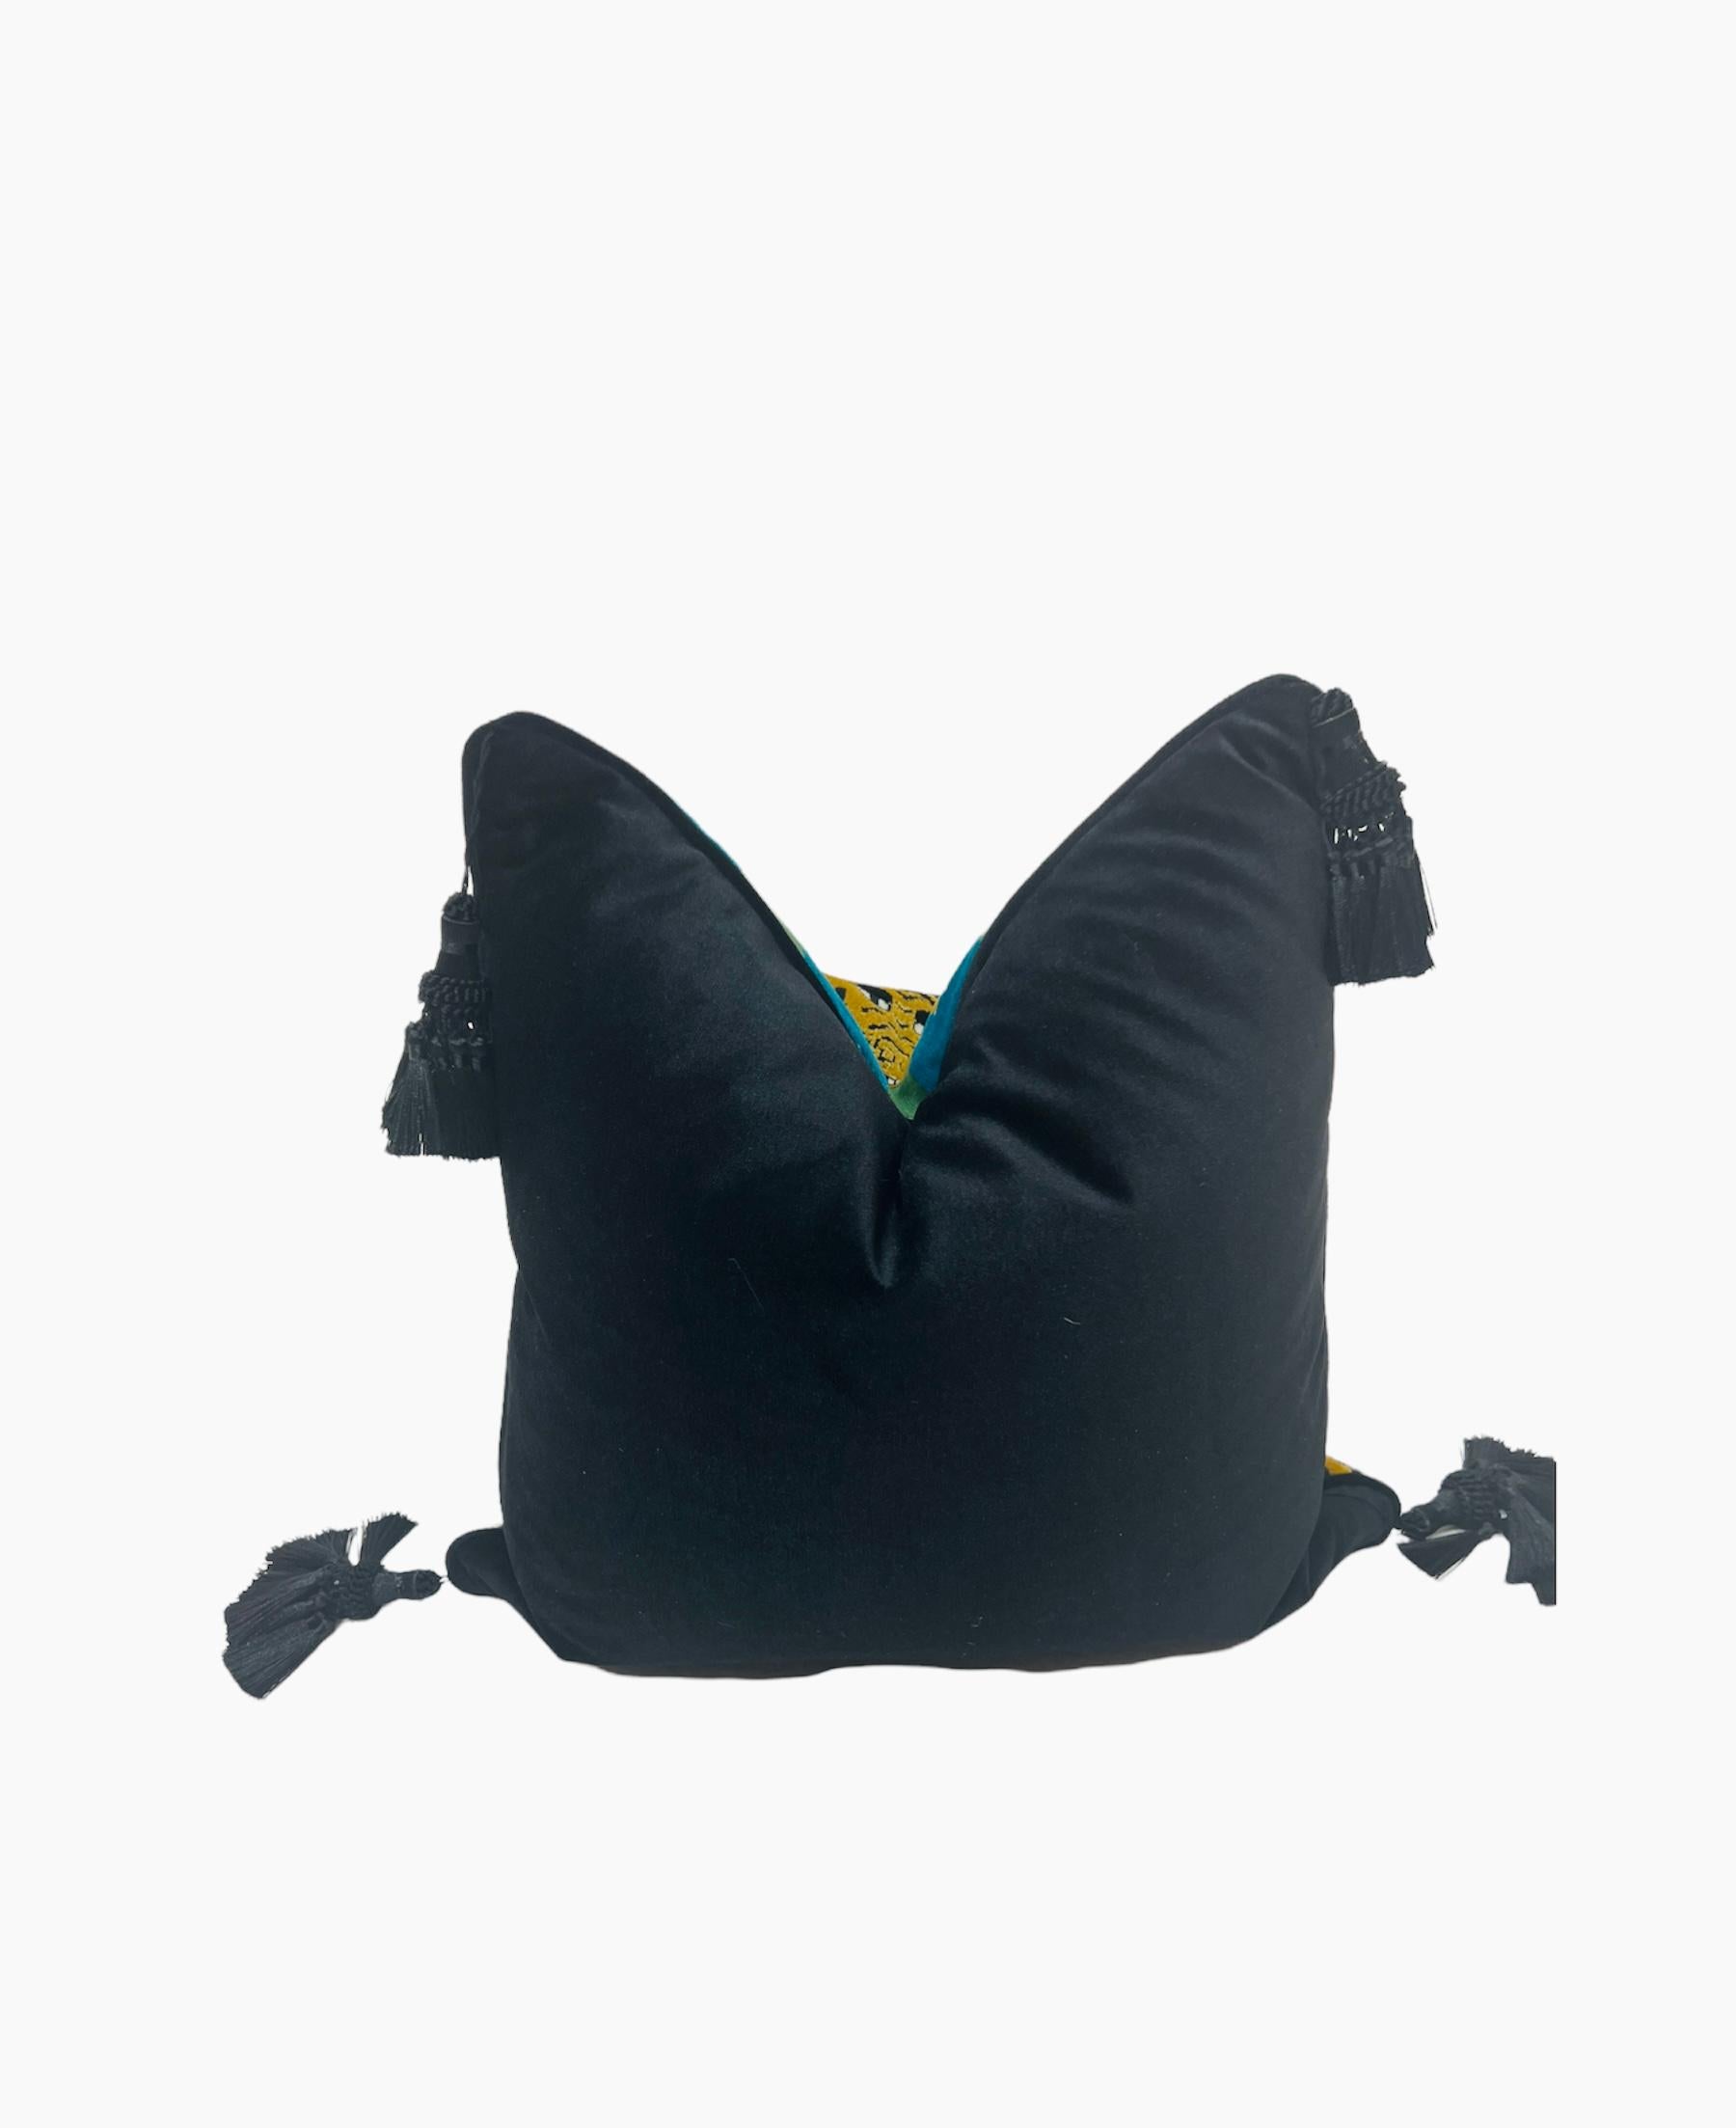 Dieses Kissen ist aus Jokhang Tiger Velvet von Schumacher gefertigt und an beiden Enden mit schwarzen Quasten versehen. 
Wir haben jedes Kissen sorgfältig von Hand genäht und den Details besondere Aufmerksamkeit geschenkt. Die Rückseite des Kissens